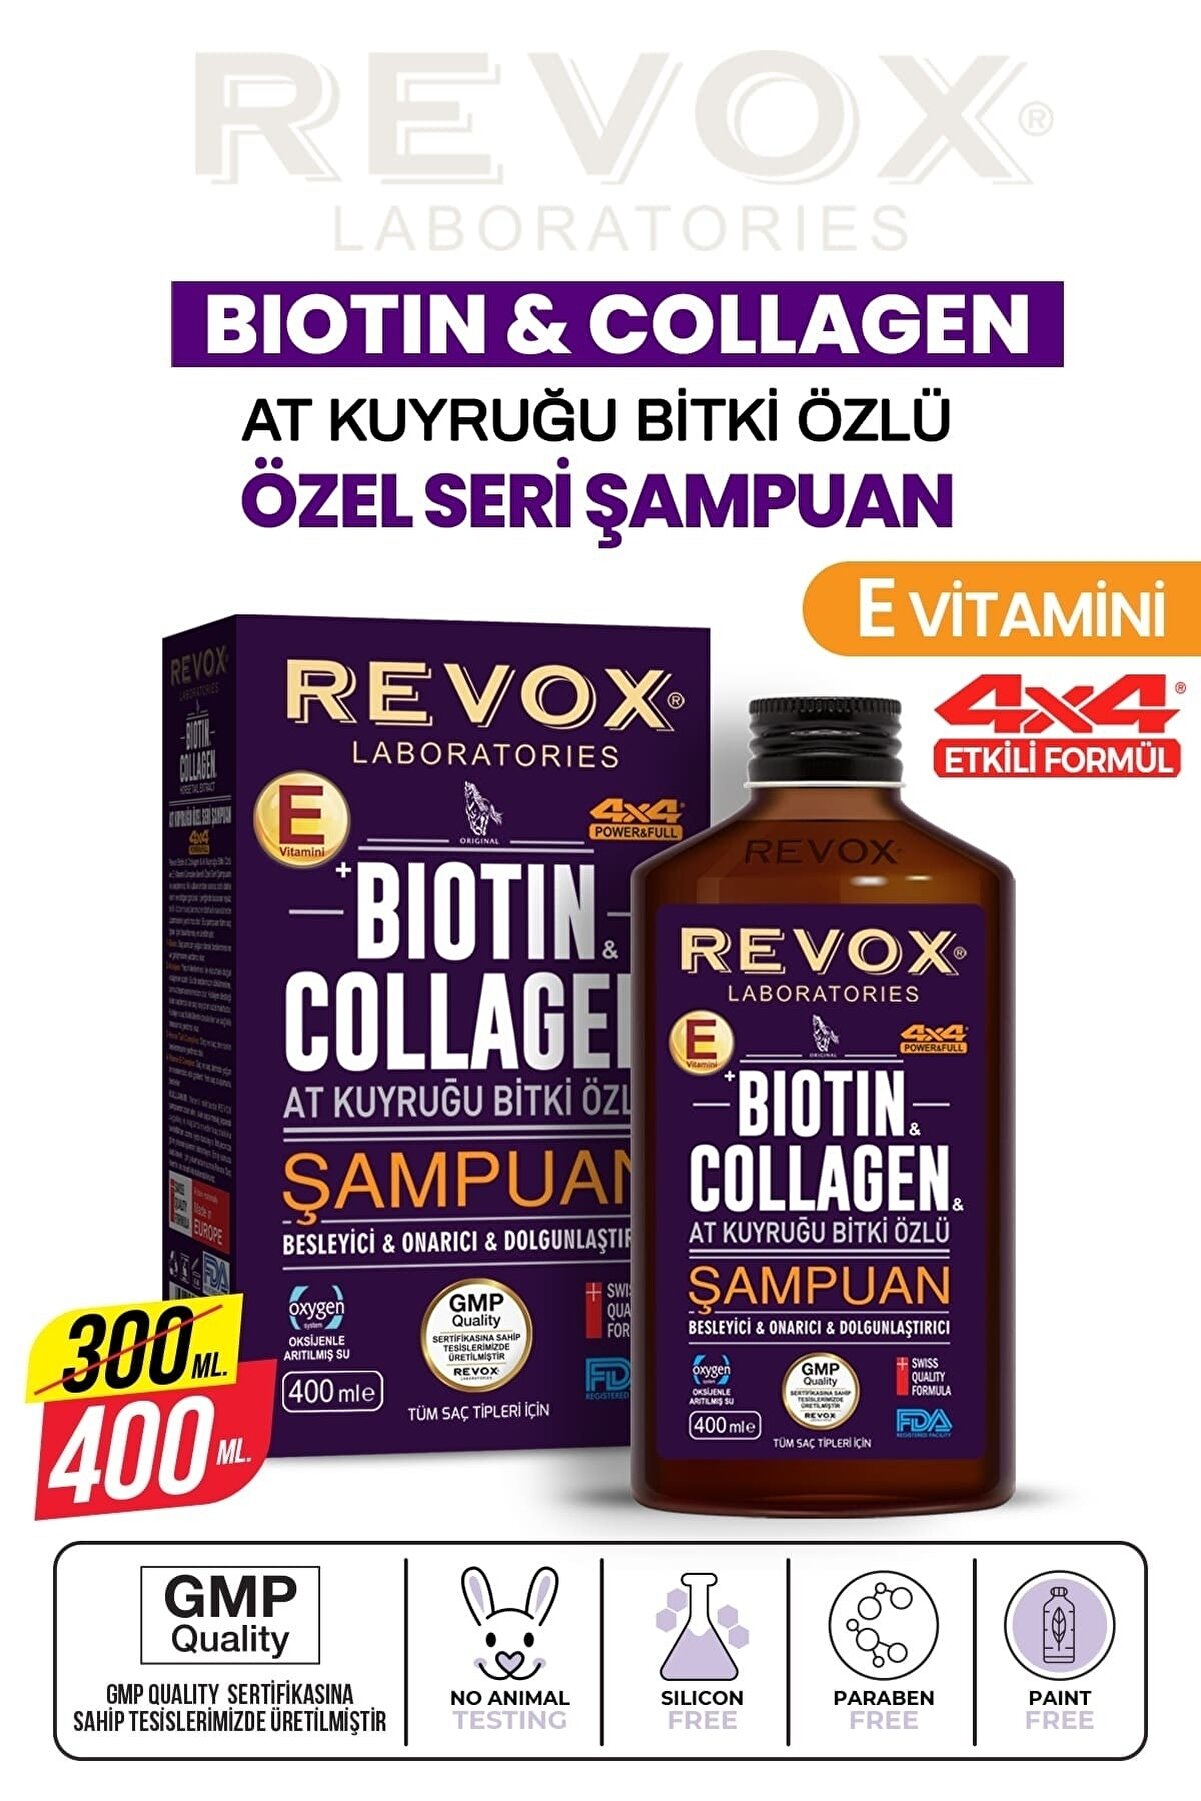 Revox Bıotın & Collagen + At Kuyruğu Bitki Özlü Şampuan